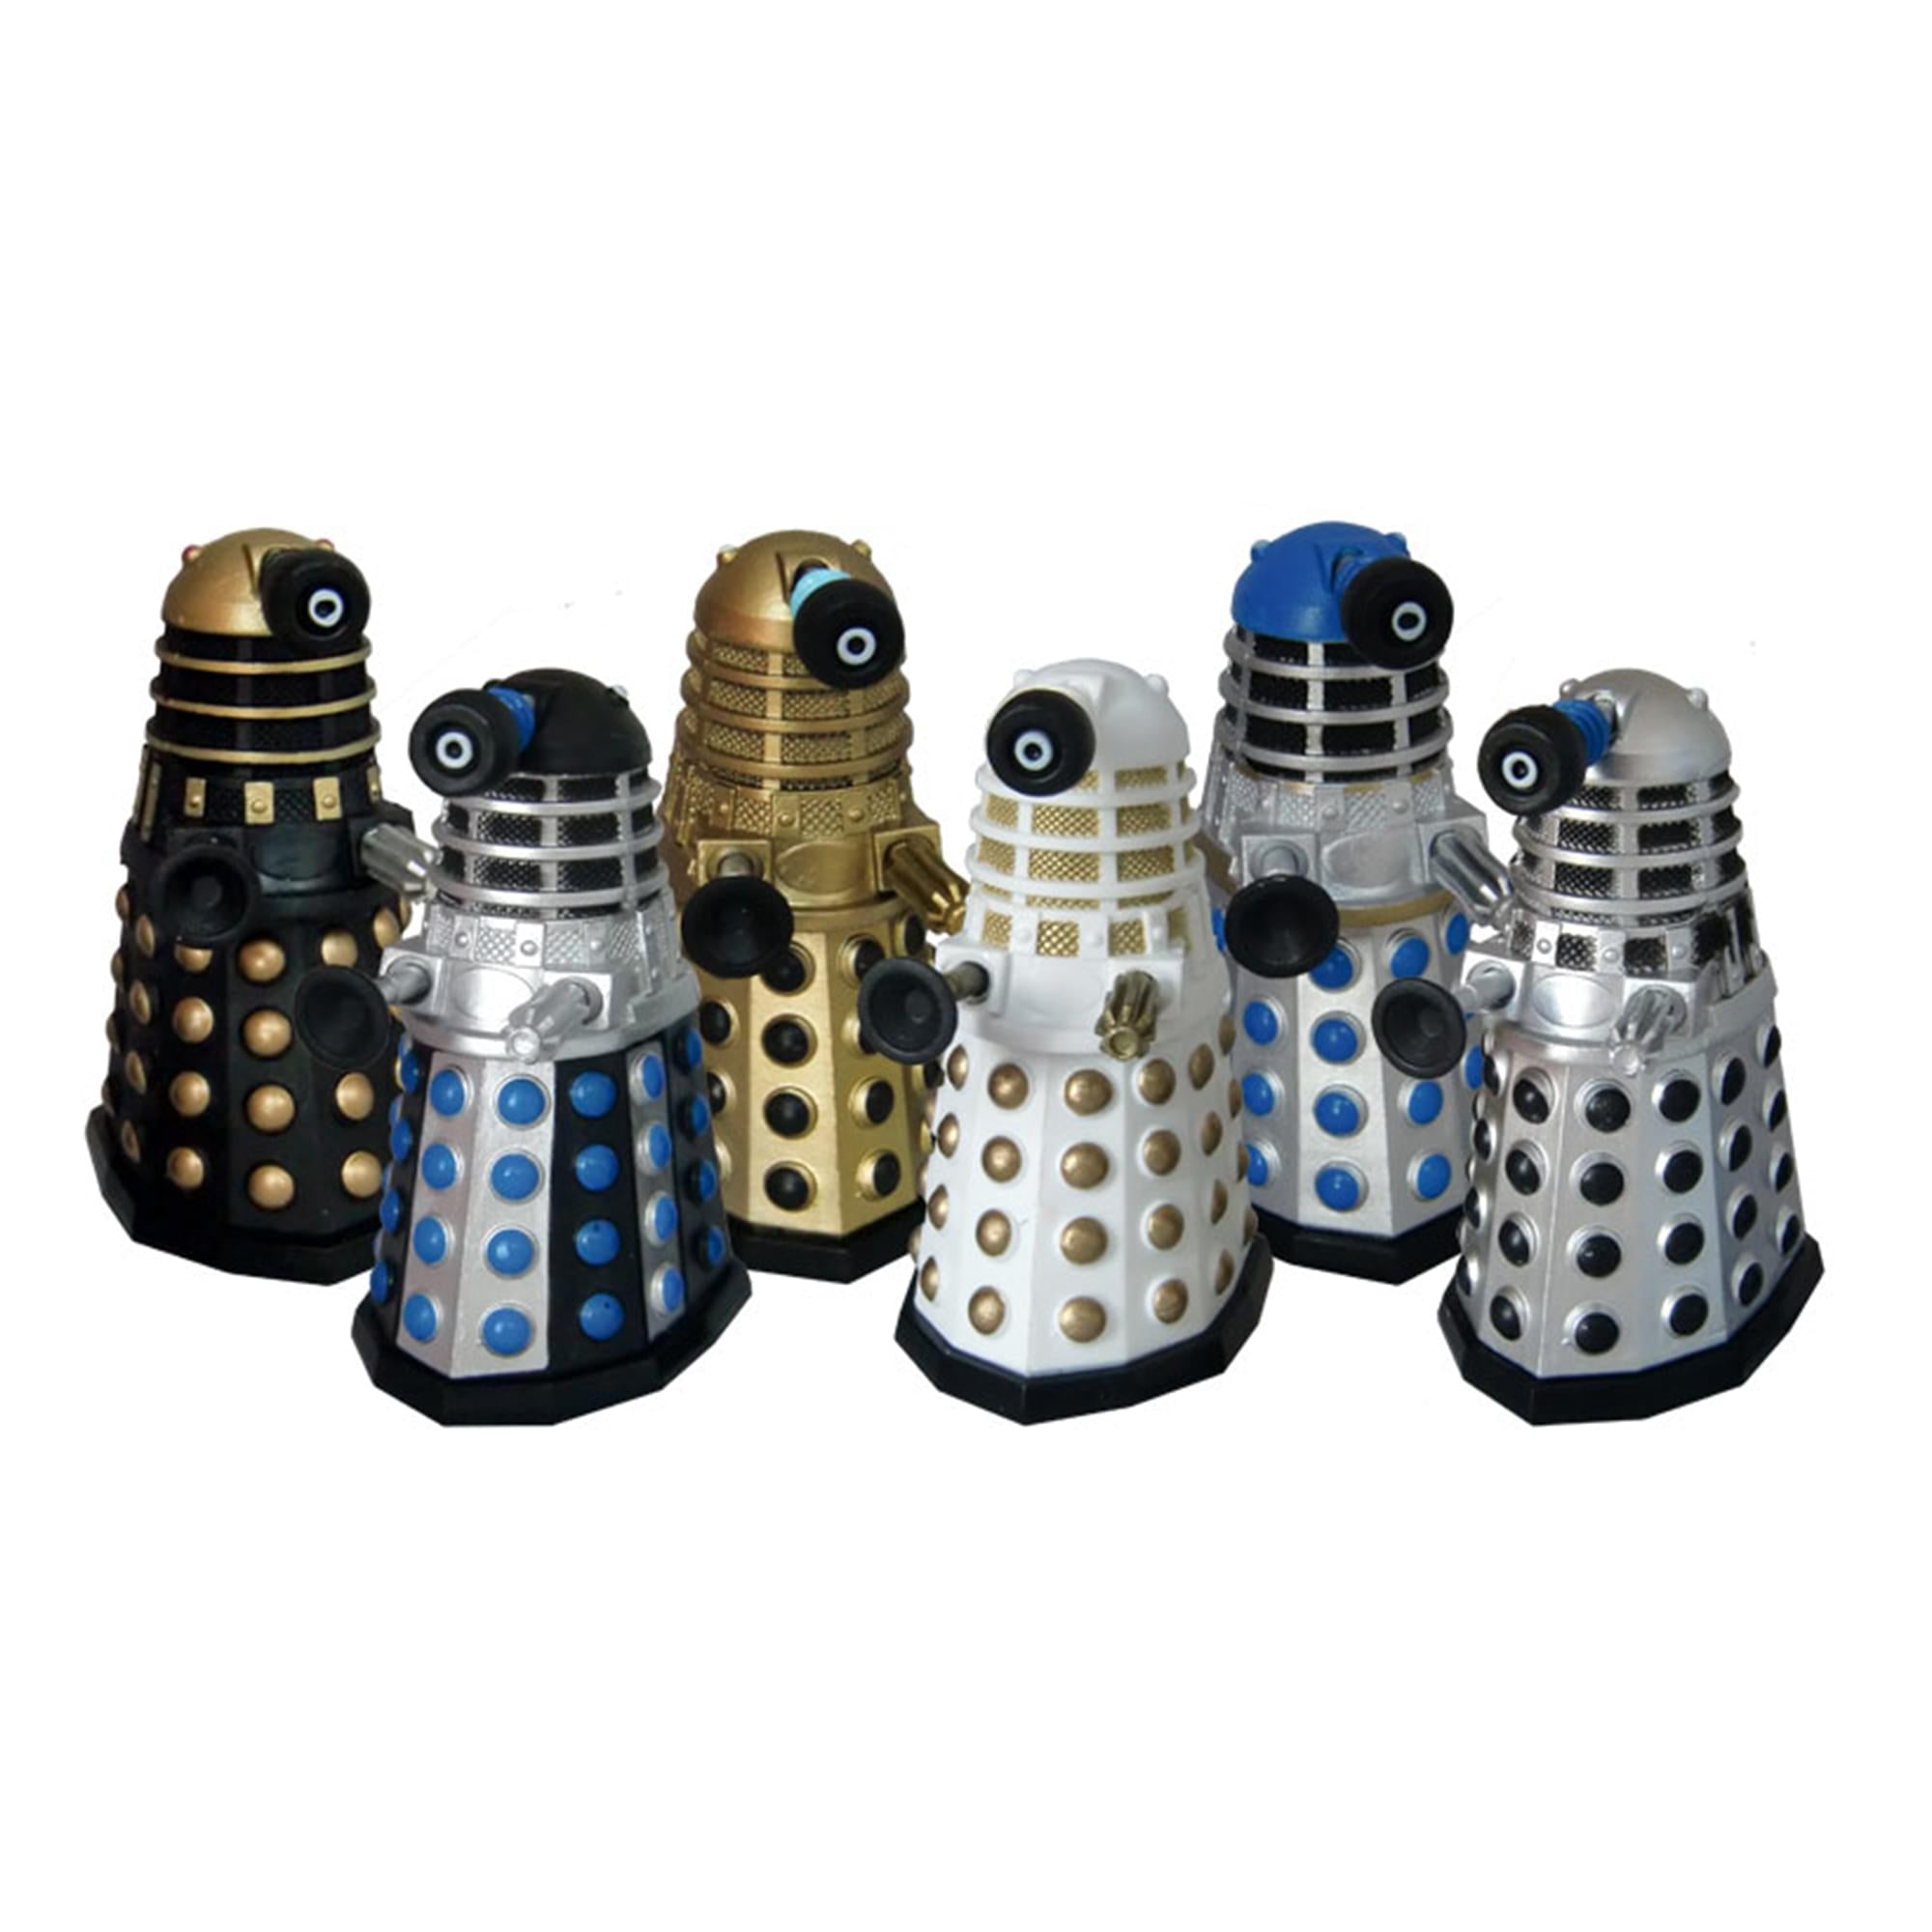 Doctor Who Daleks Of Skaro Bobble Figure 6 Pack